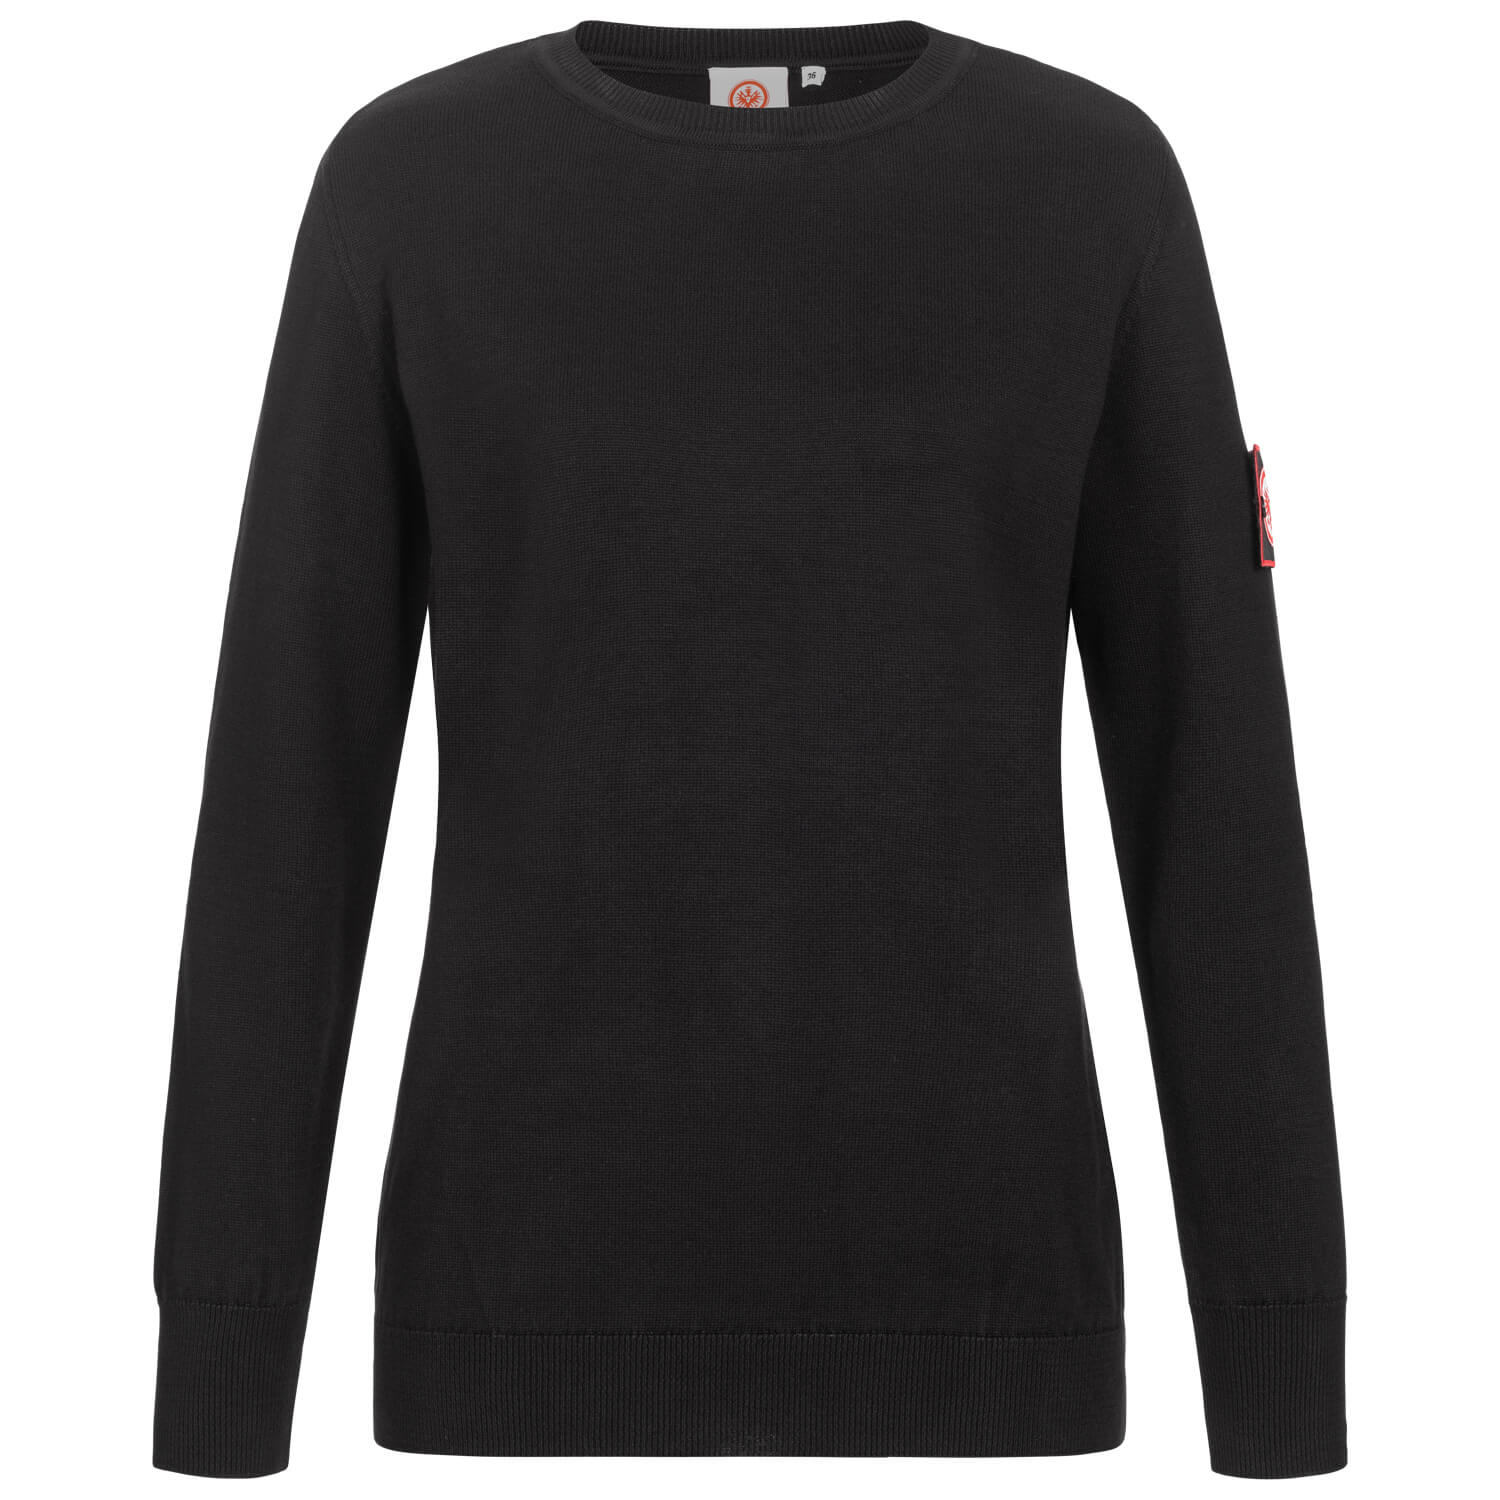 Bild 1: Damen-Pullover Logo schwarz